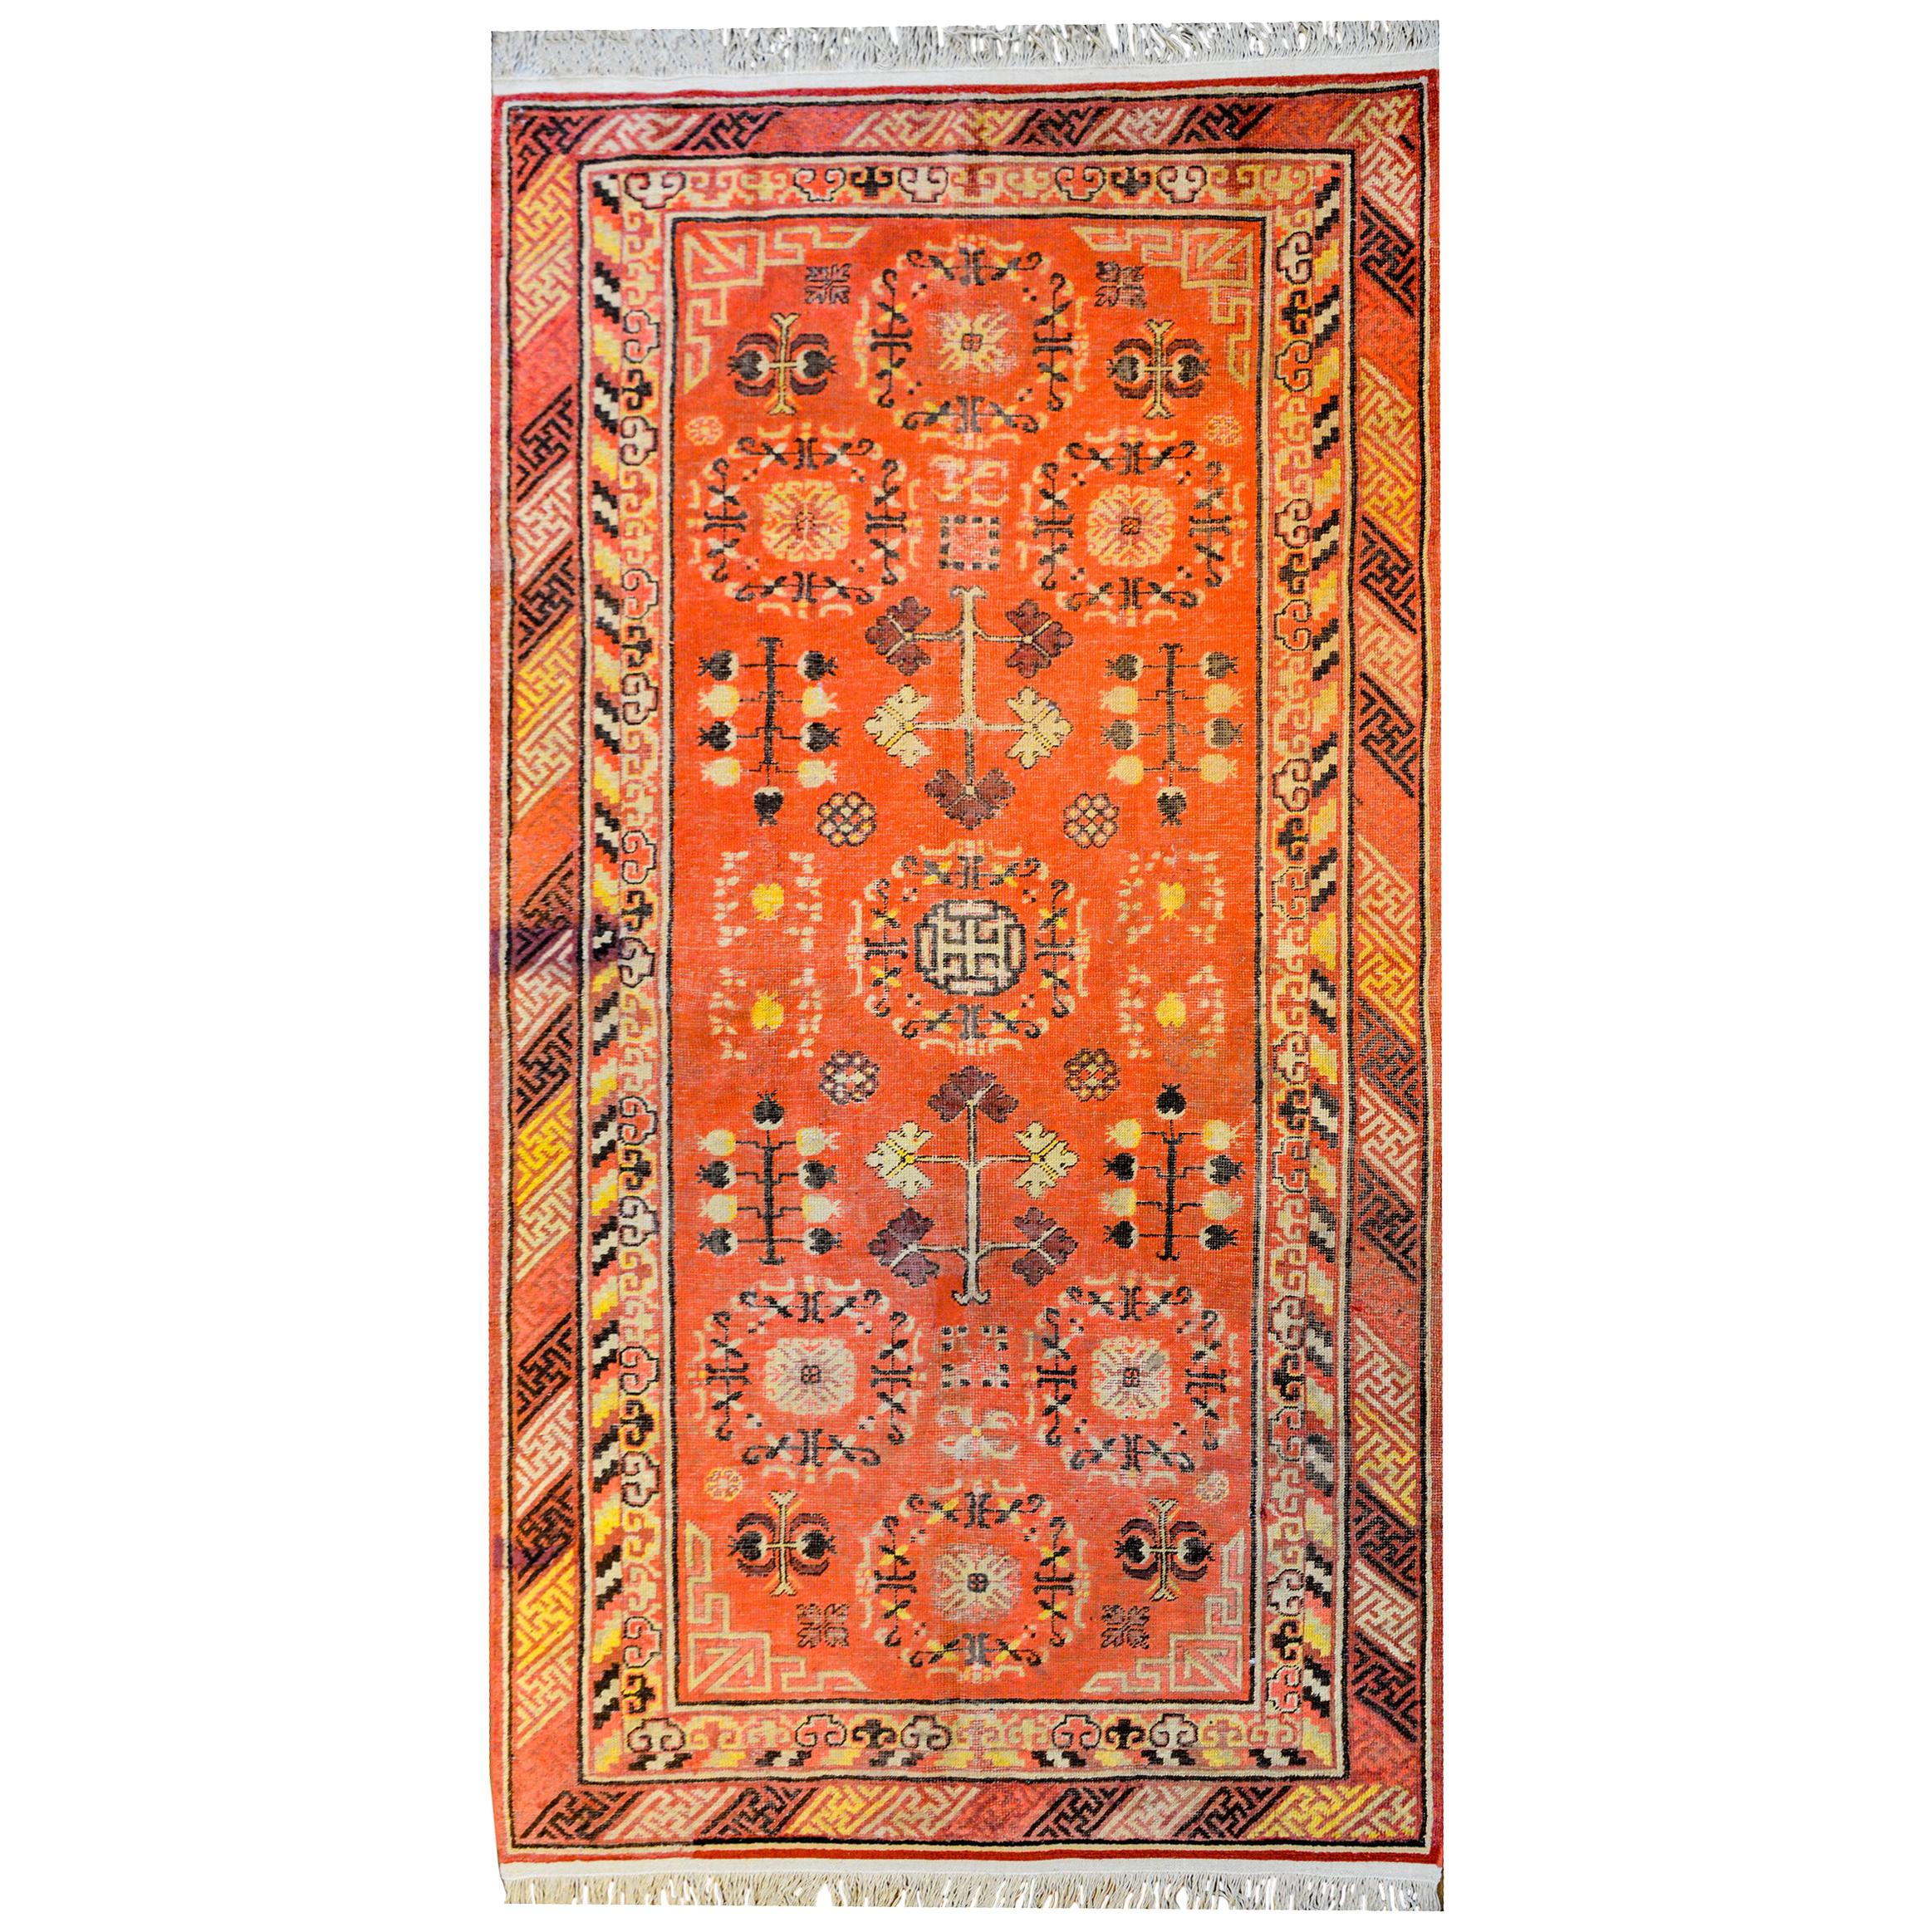 Wunderschöner zentralasiatischer Khotan-Teppich des frühen 20. Jahrhunderts